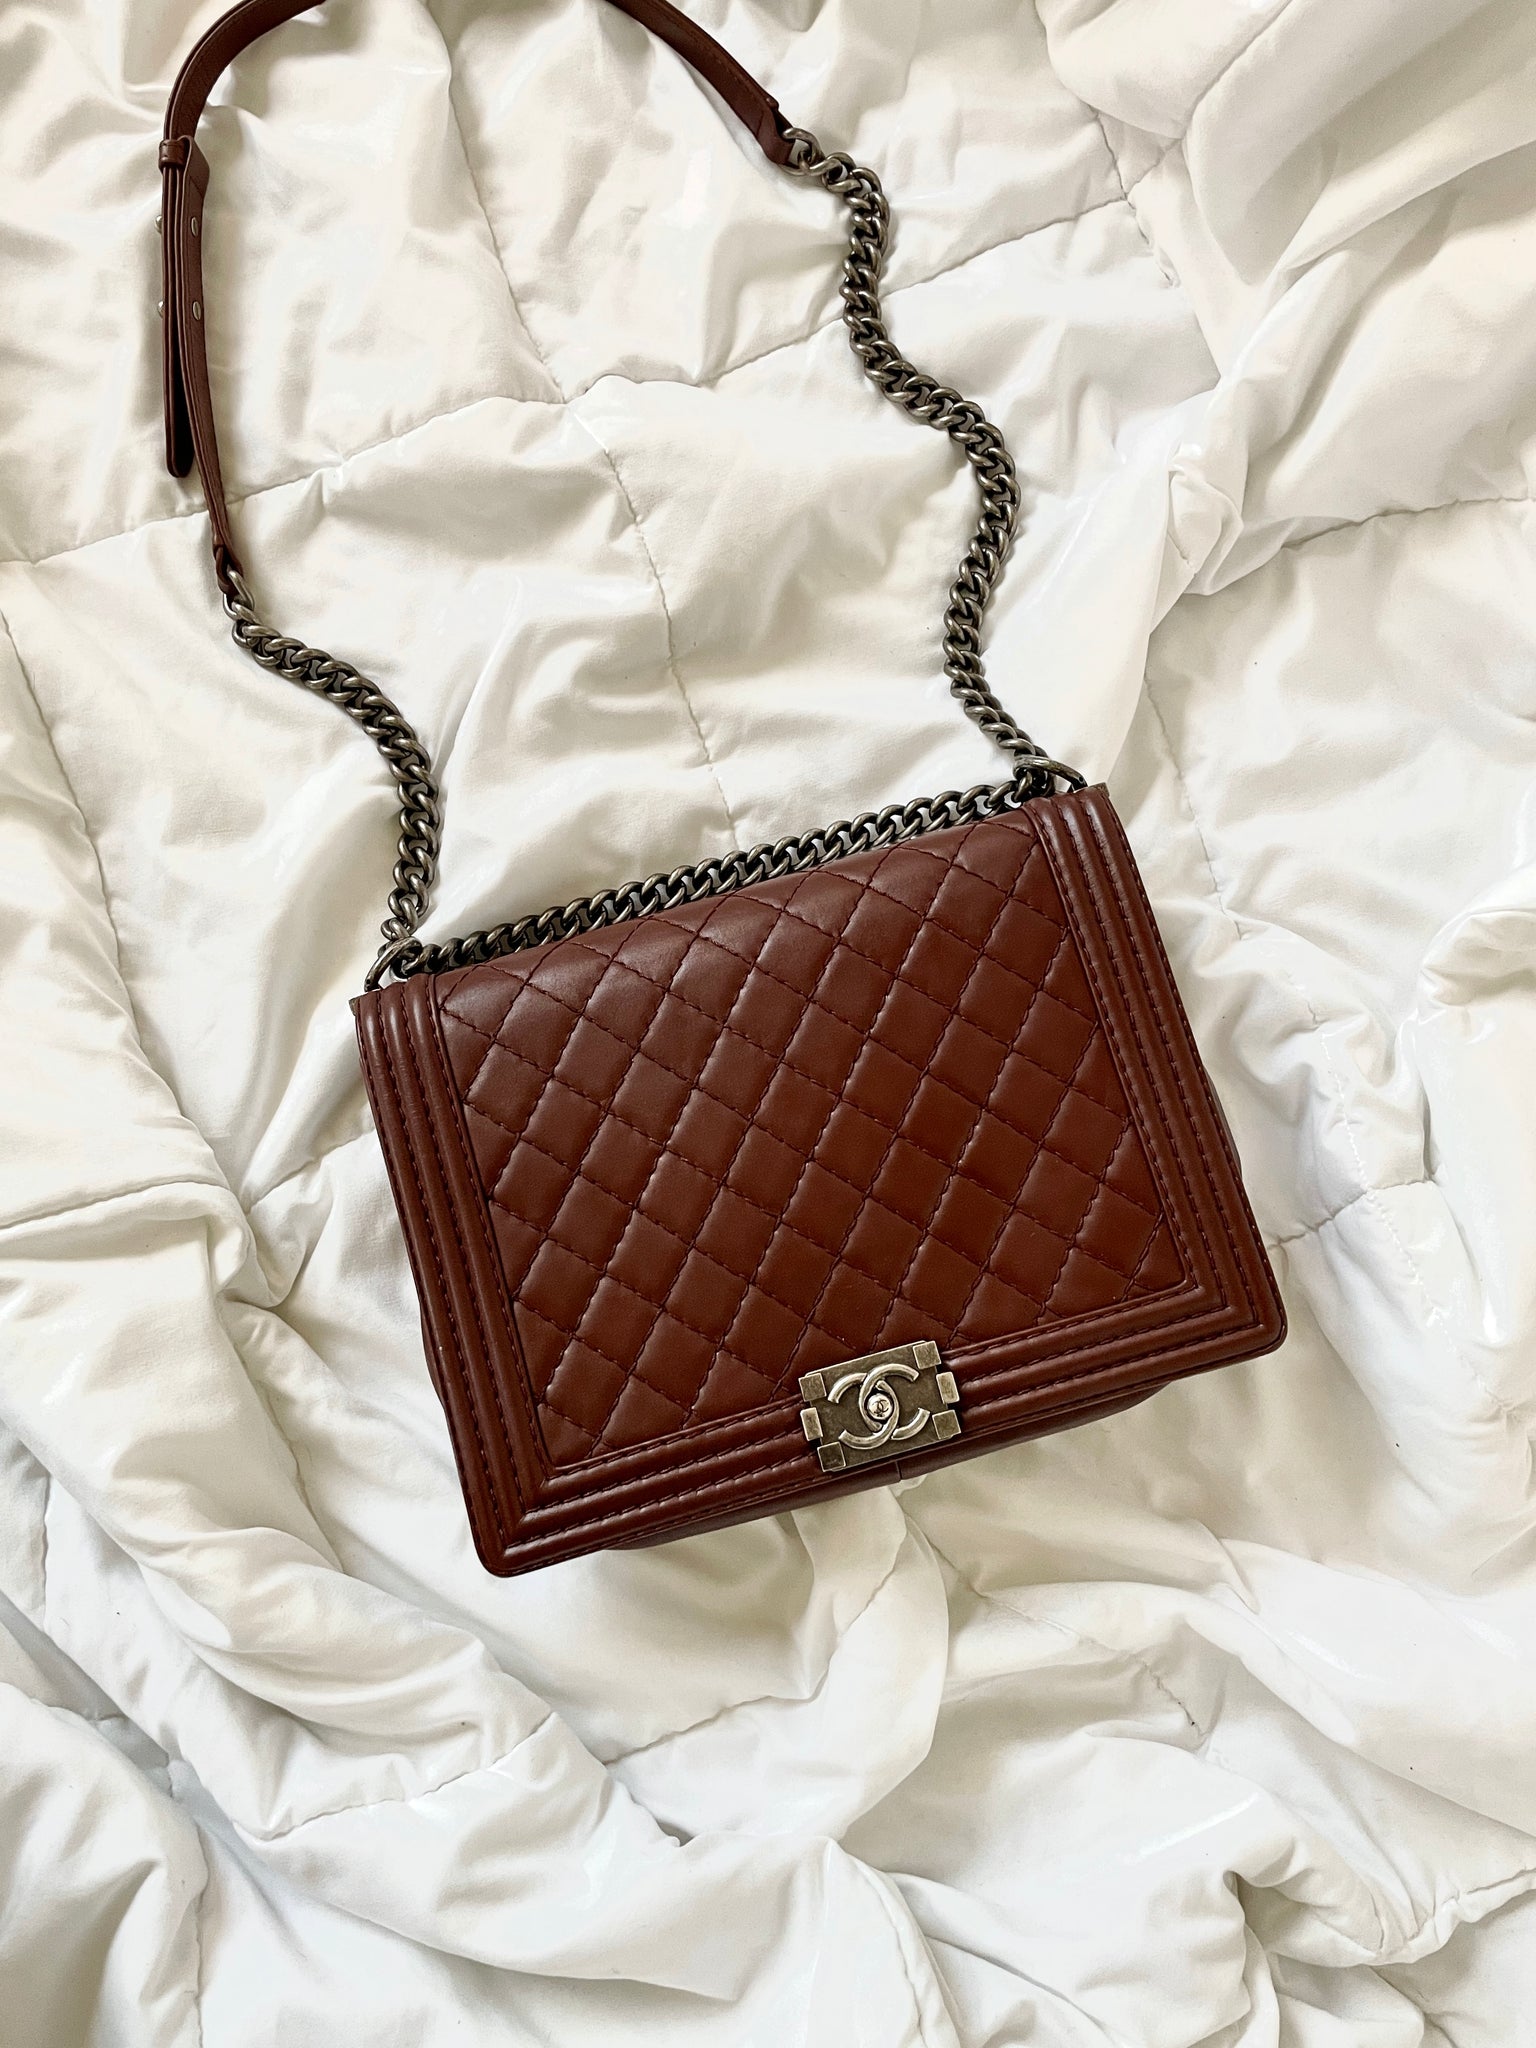 Chanel Handbag Boy Enchained Medium Chain Flap 234201 Black Leather X Tweed  Shoulder Bag, Chanel